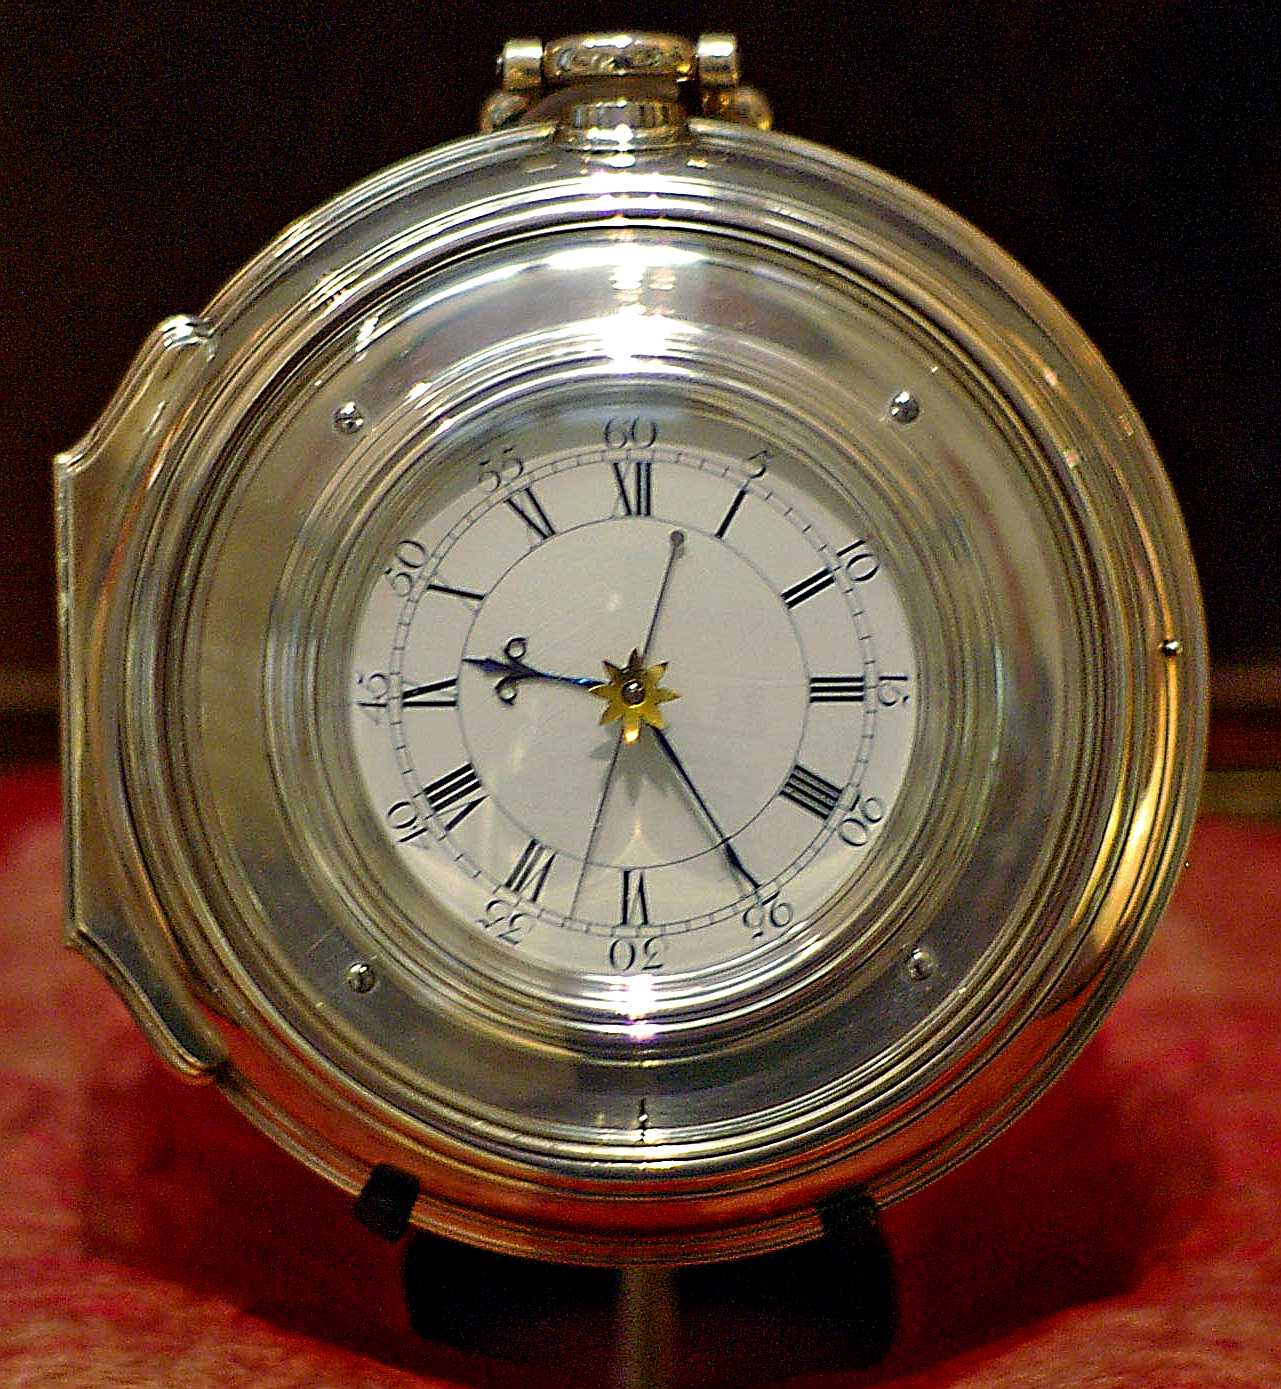 H5 marine chronometer designed by John Harrison